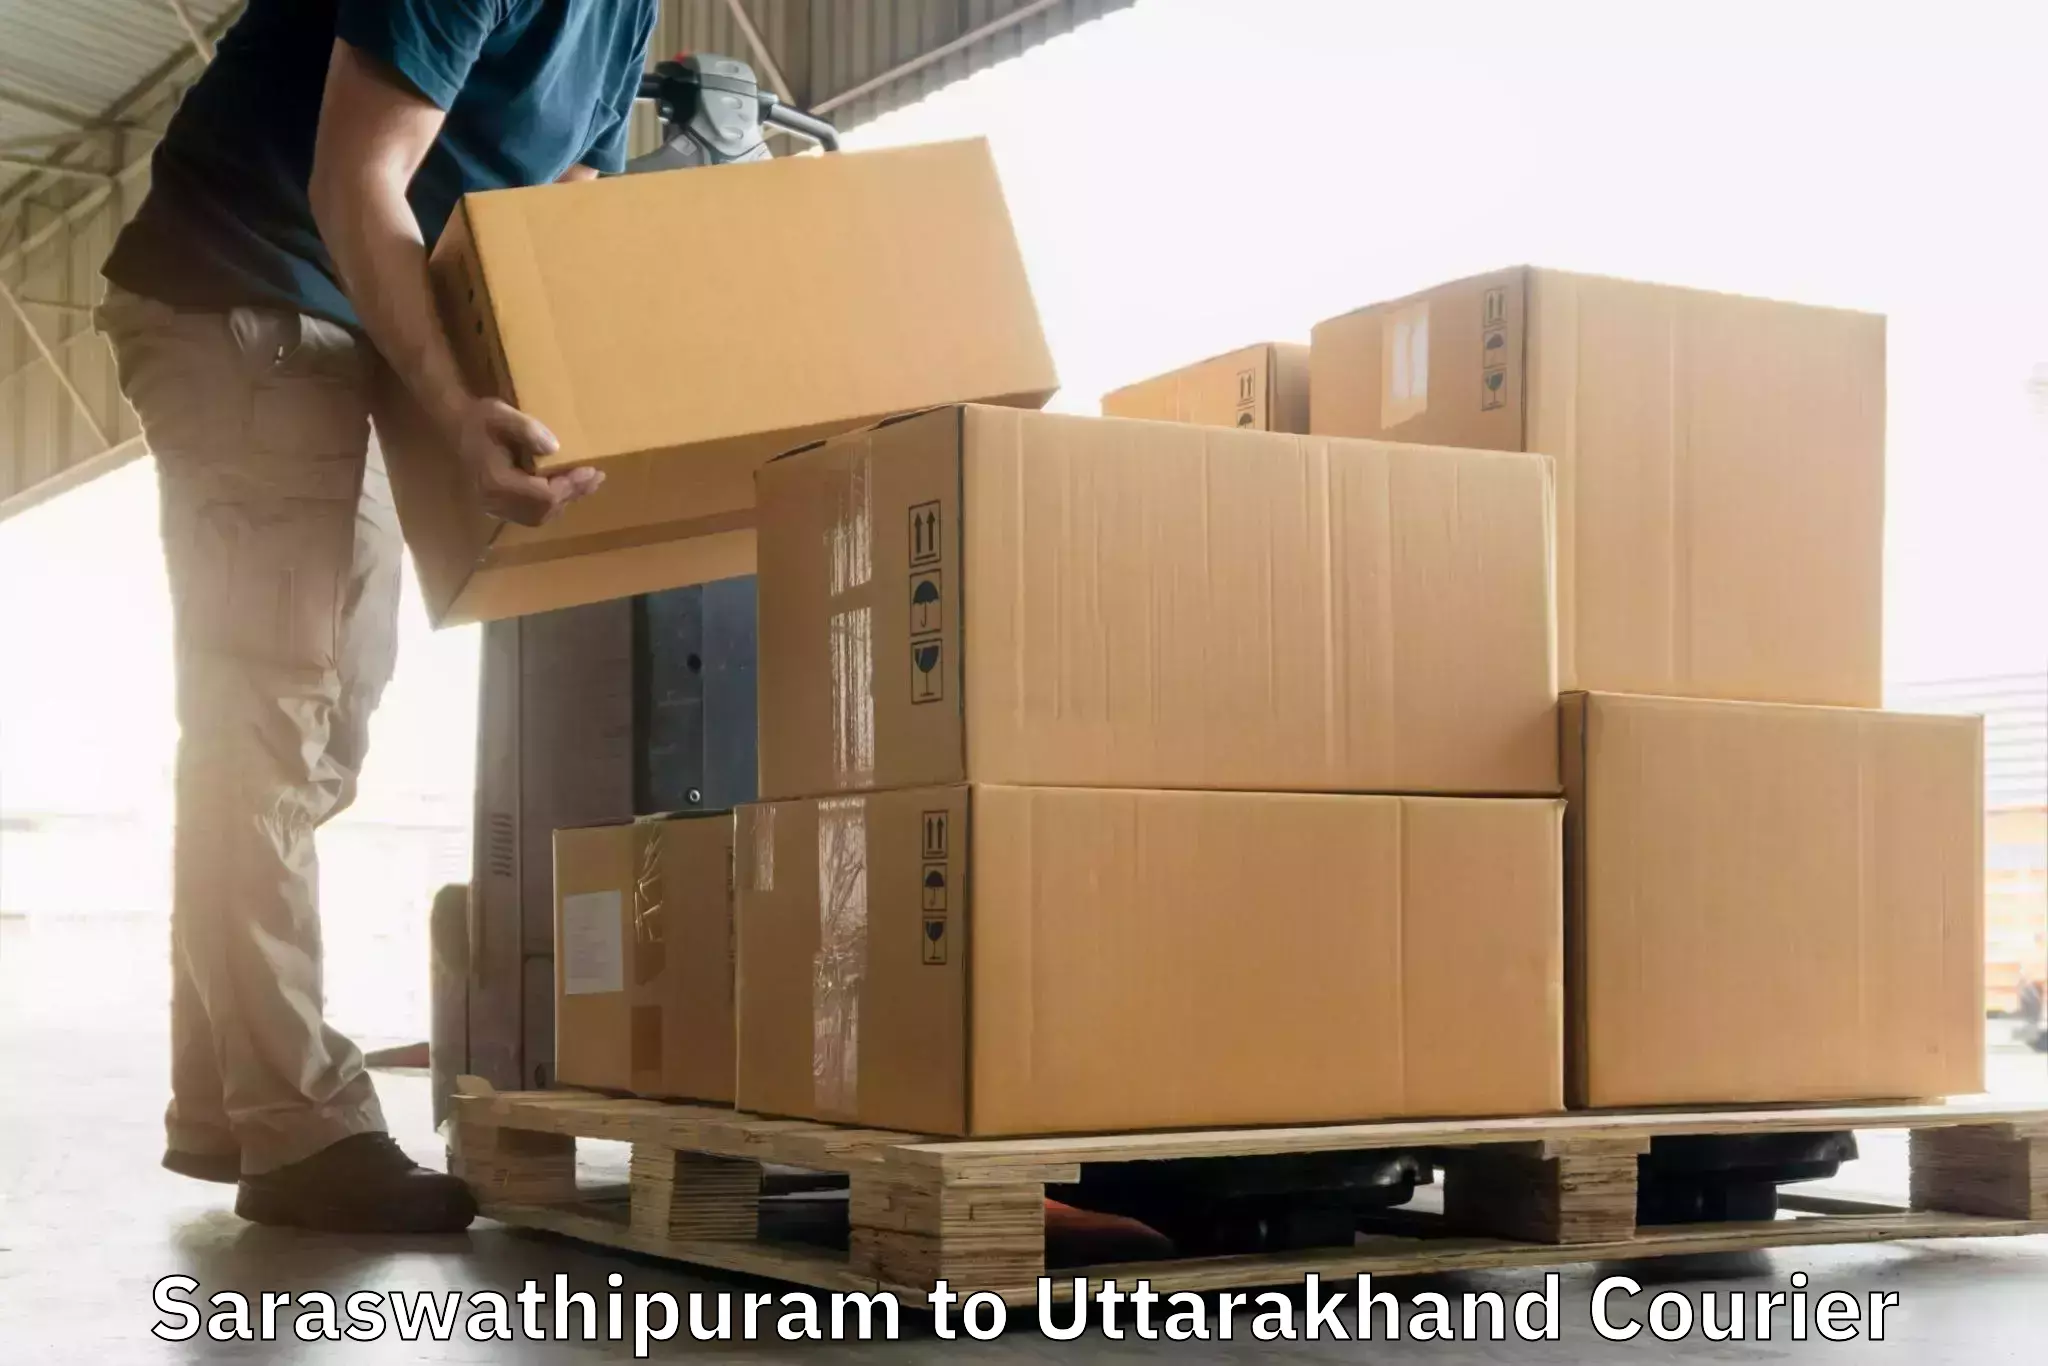 Global courier networks Saraswathipuram to Rudrapur